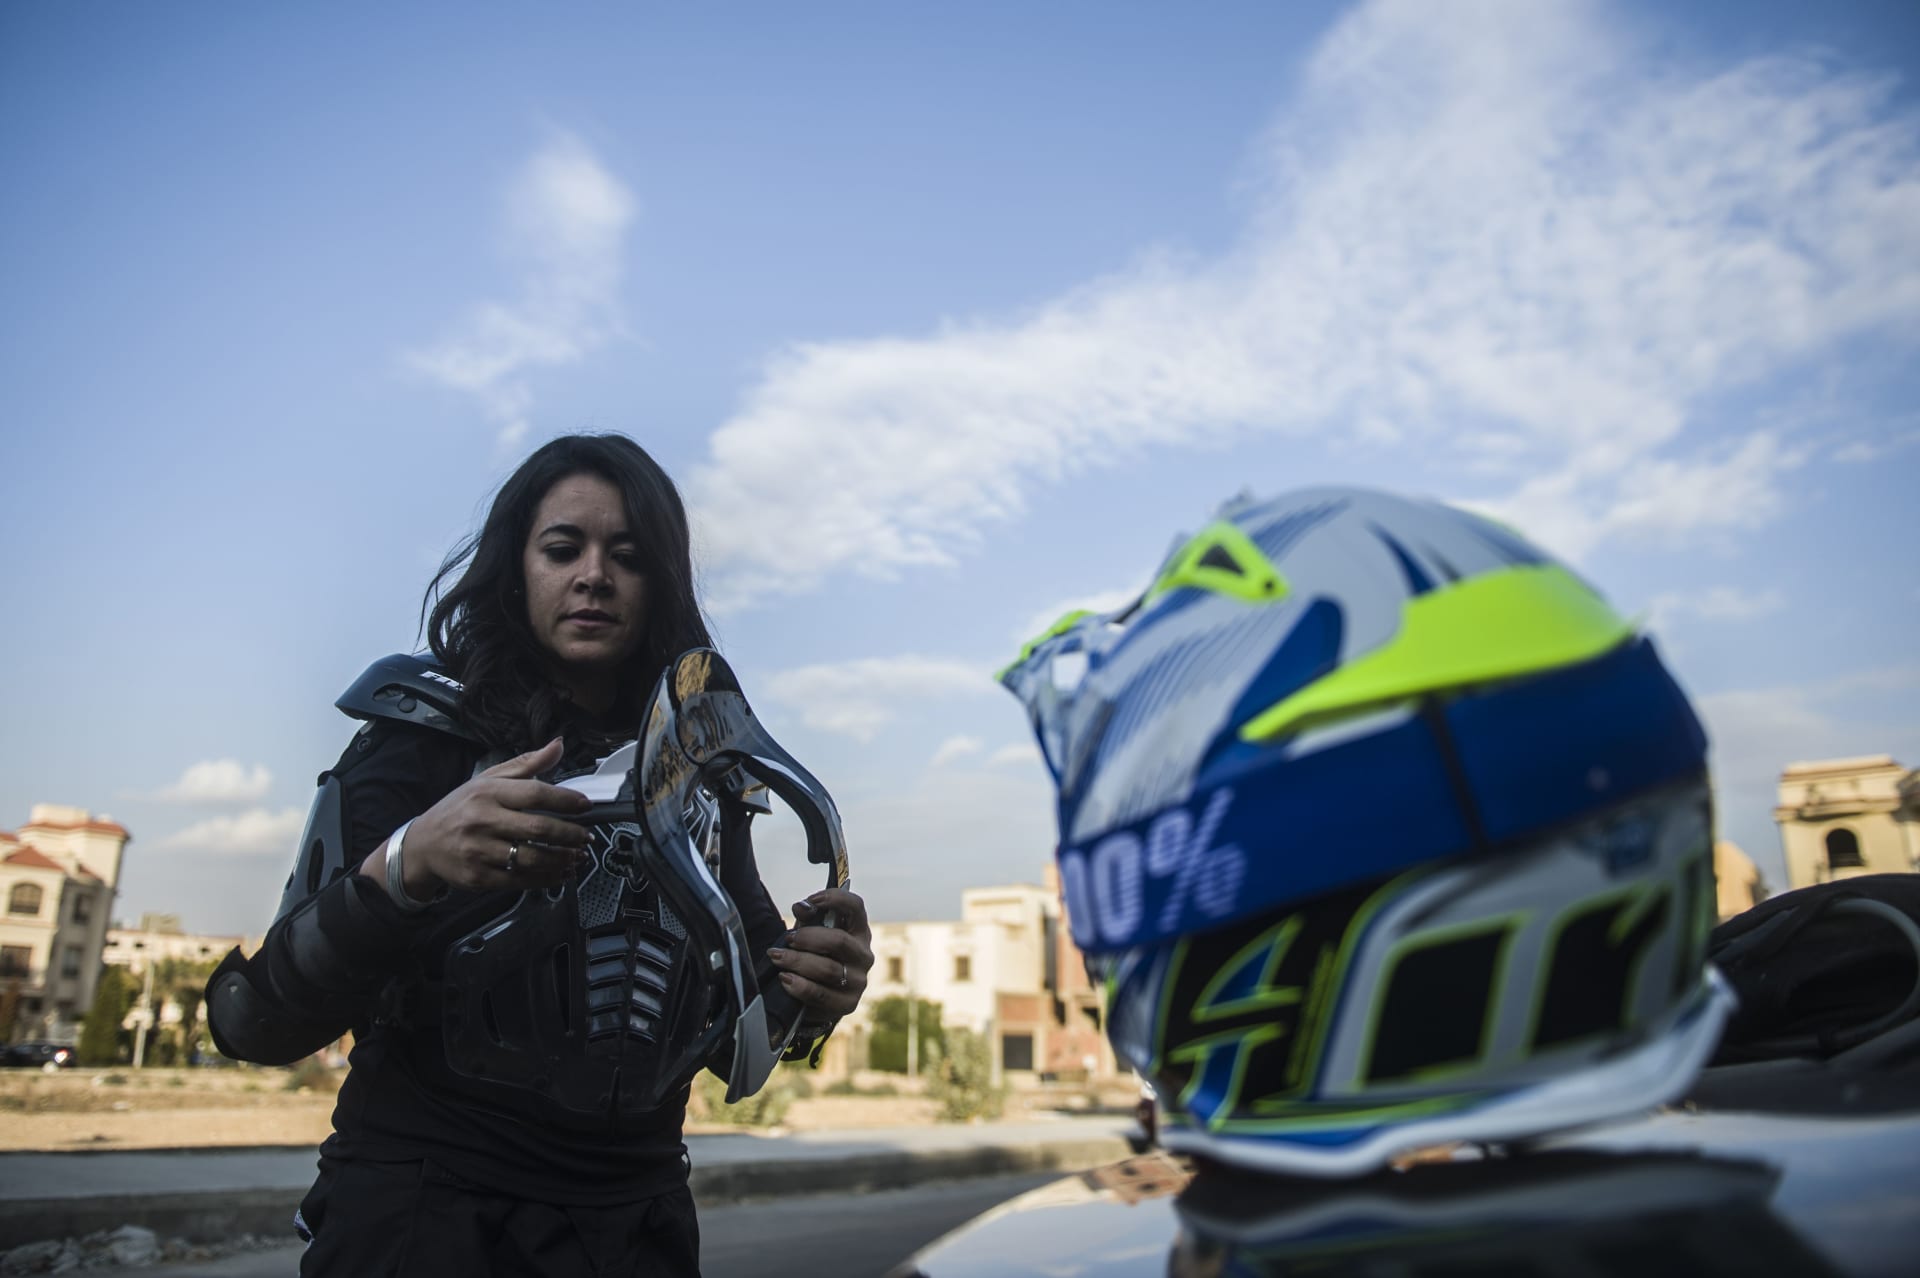 "أريد أن أصبح بطلة العالم".. من هي سائقة رالي مصر الوحيدة؟